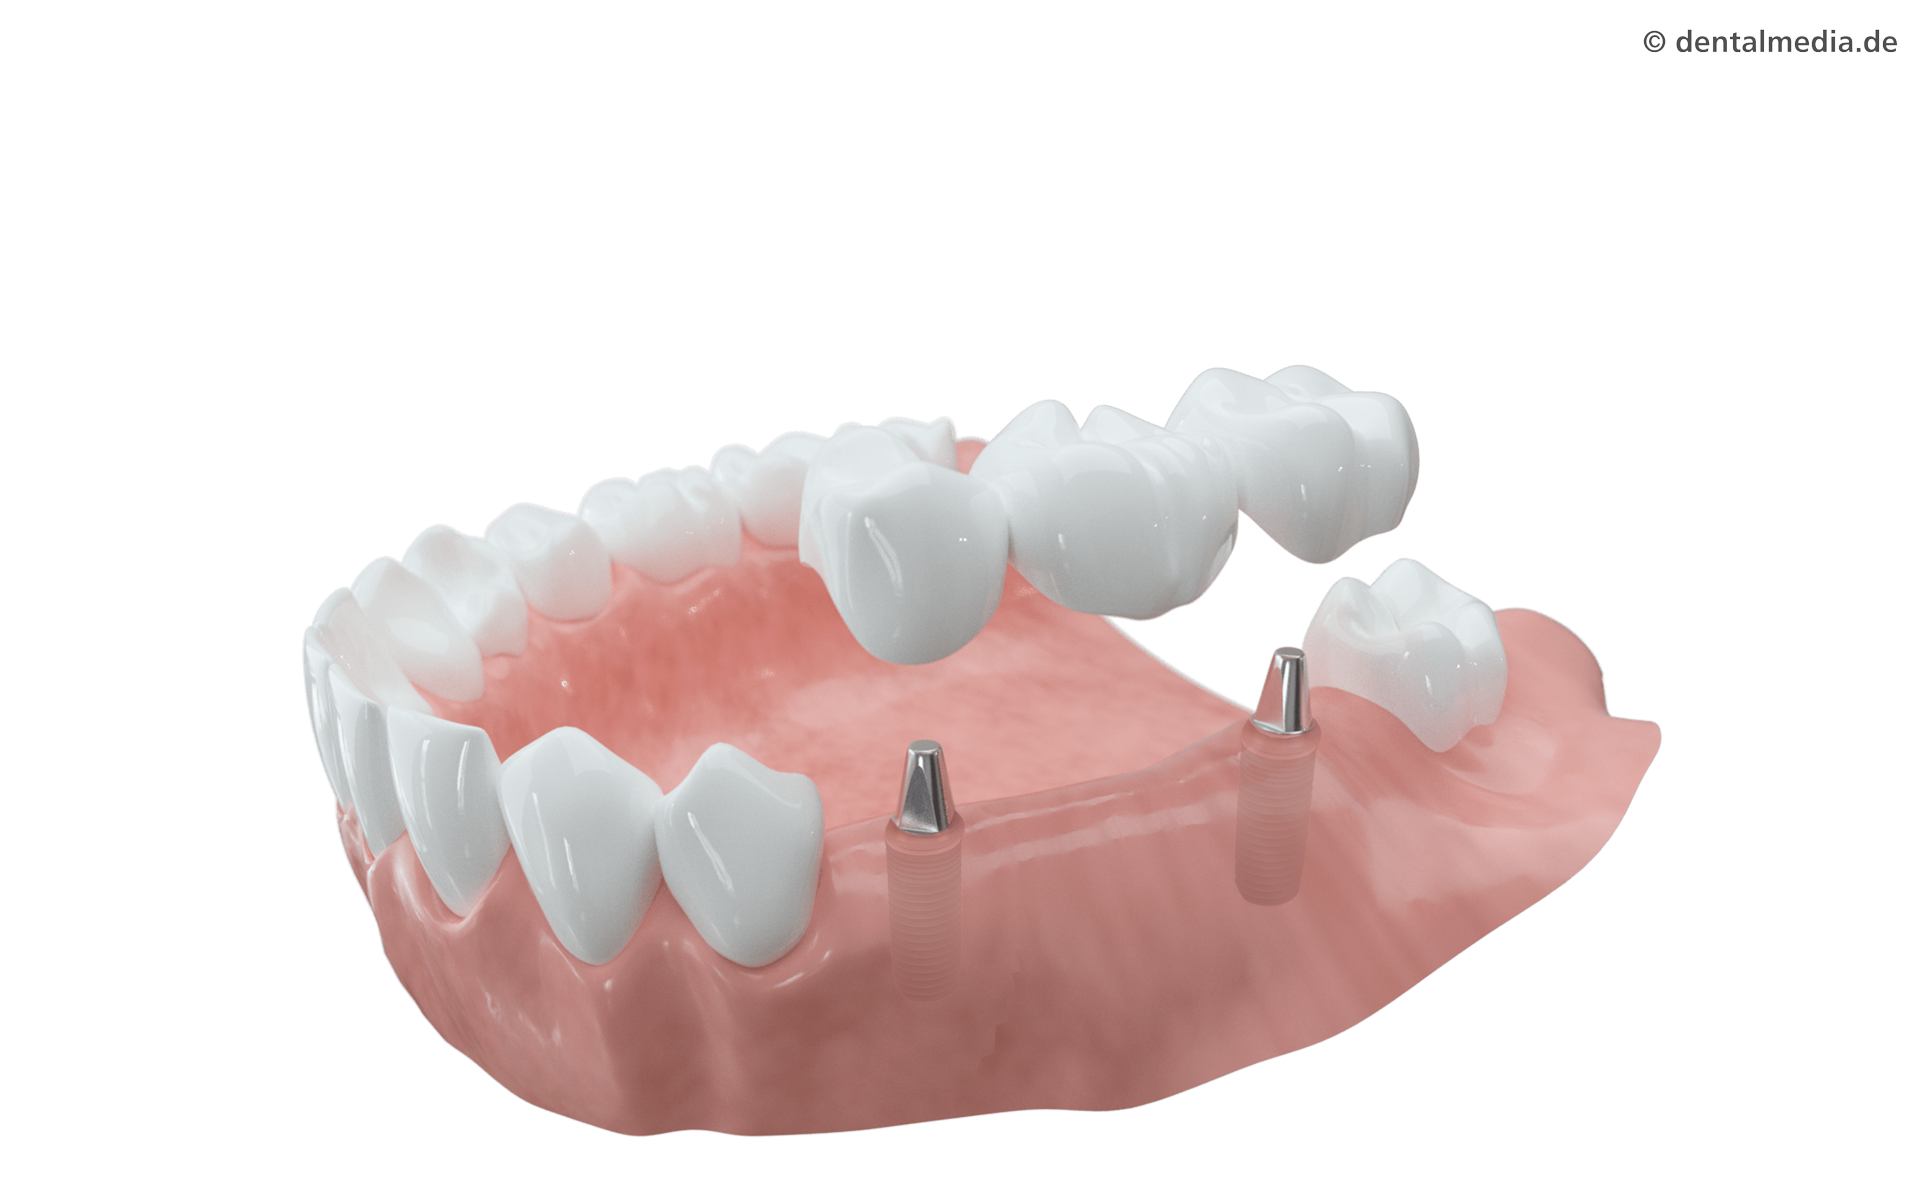 Mehrere Zähne fehlen. Die fehlenden Zähne werden durch Implantate ersetzt, auf die eine Brücke aufgesetzt wird. Nachbarzähne bleiben voll erhalten.